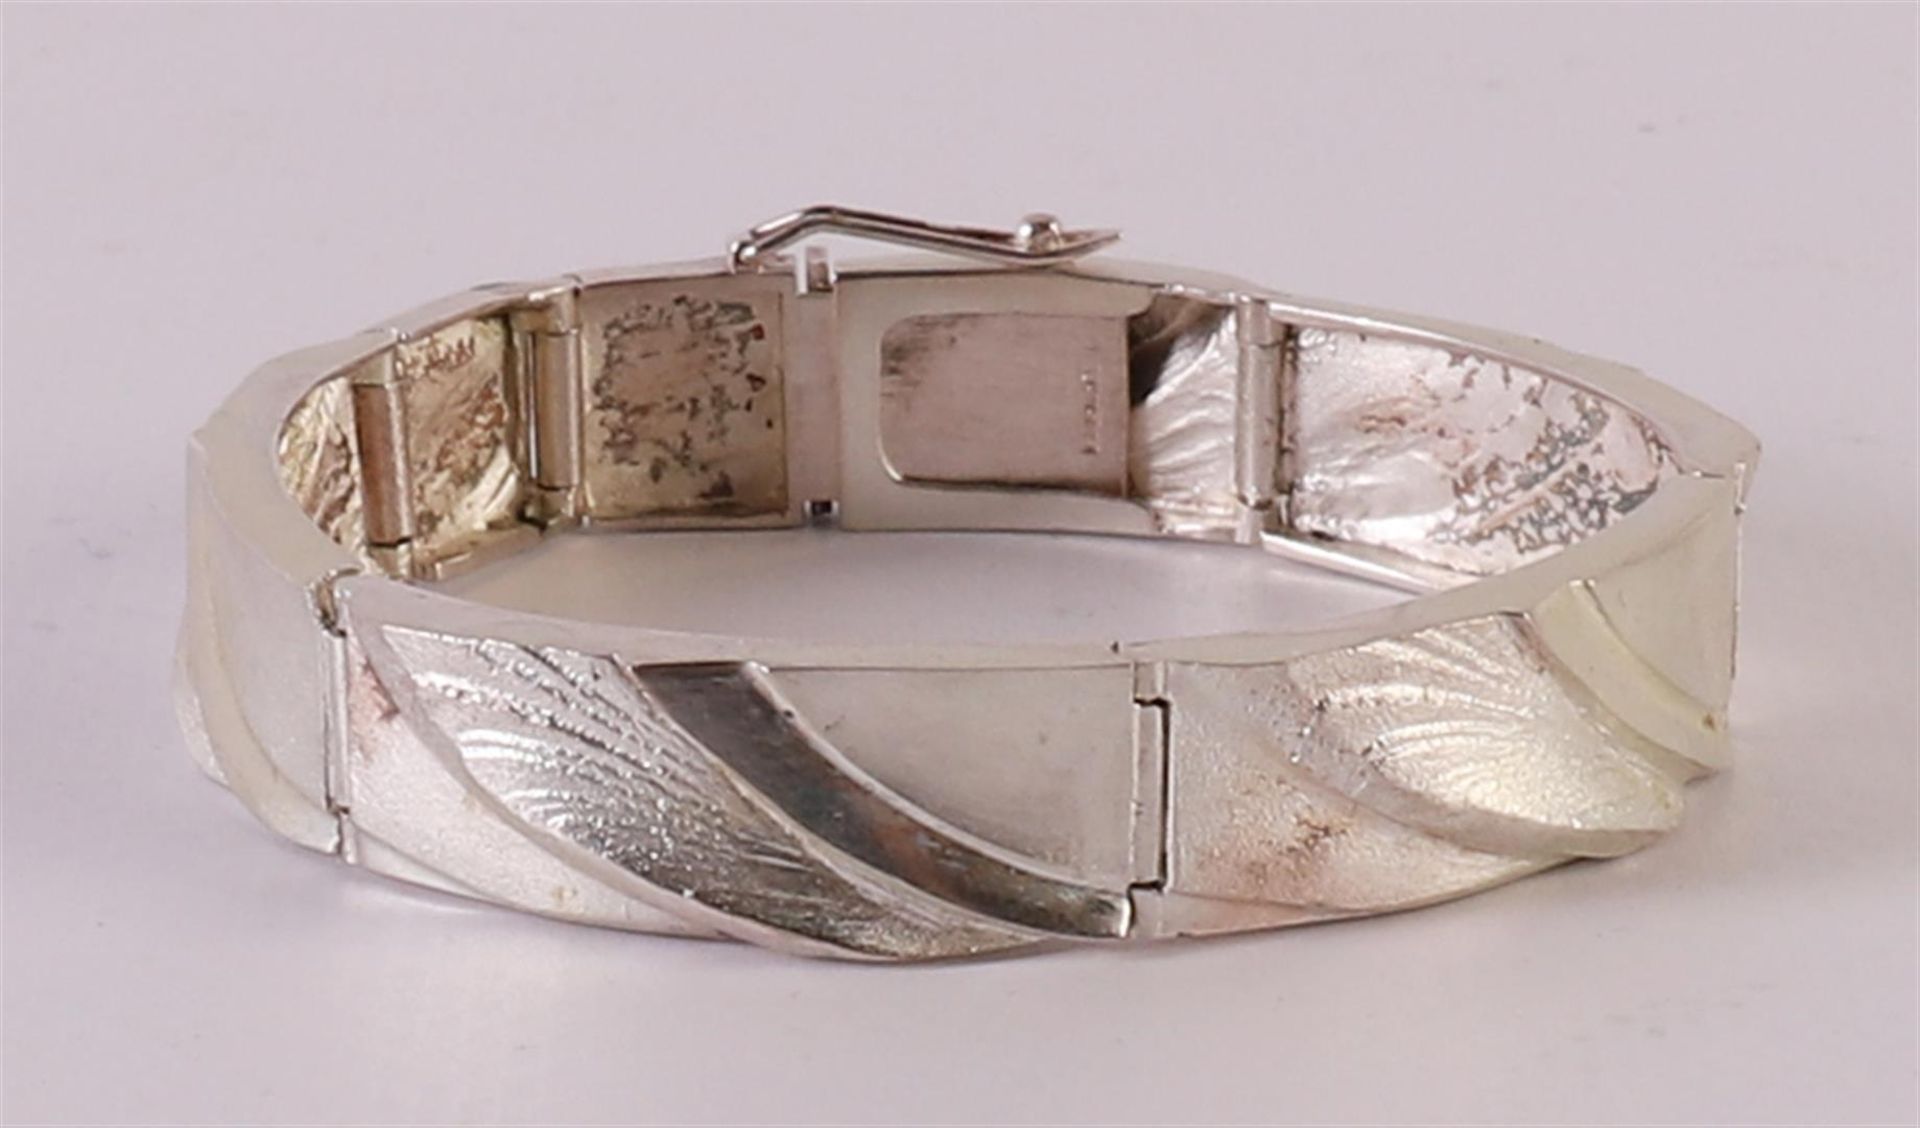 A 1st grade 925/1000 silver vintage design bracelet "MJH Matti J.Hyvärinen Finnland", marked '